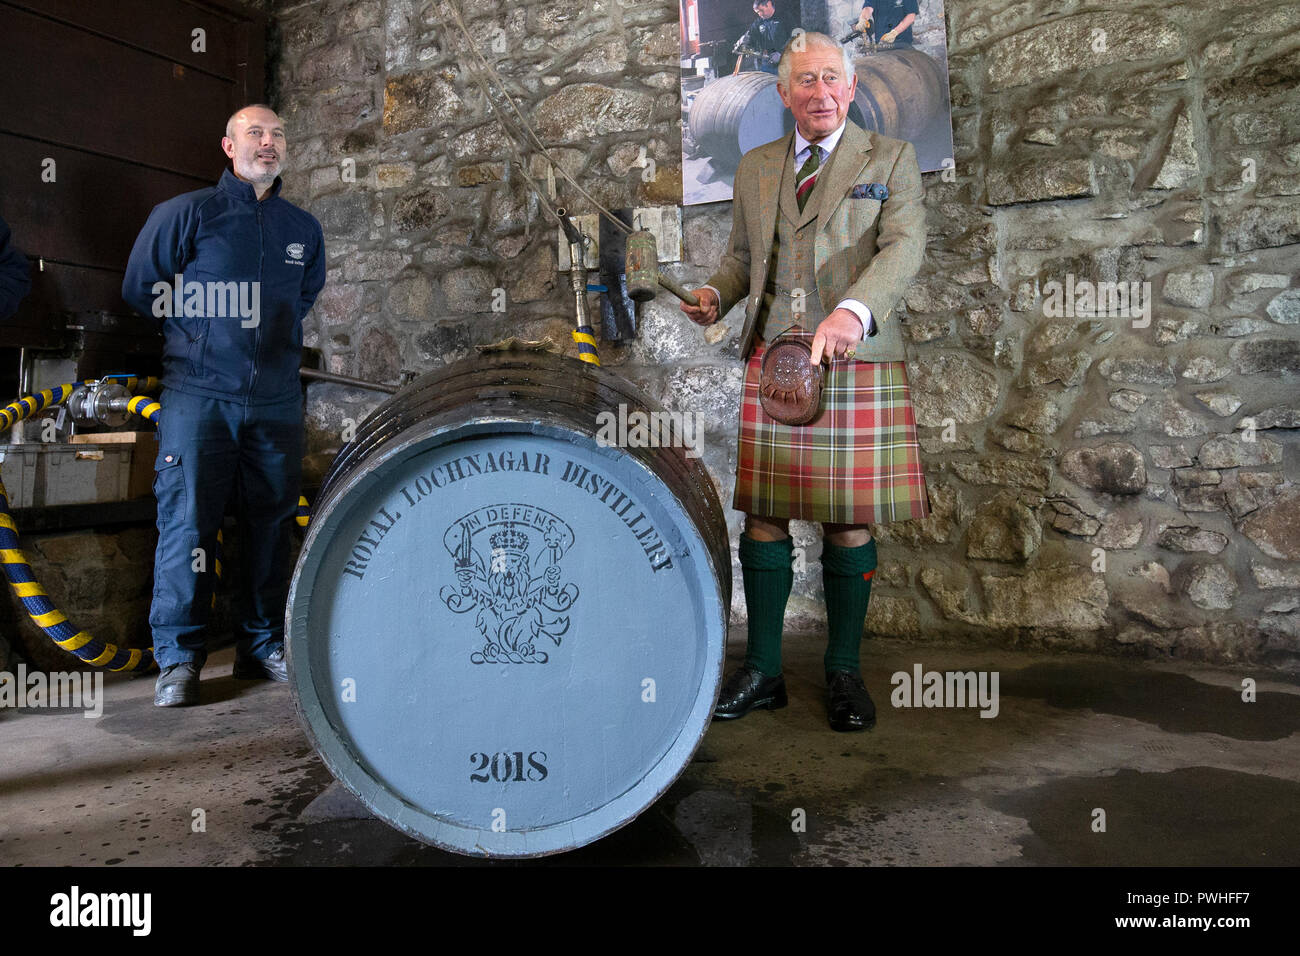 Il Principe di Galles, noto come il Duca di Rothesay mentre in Scozia, riempie un nuovo whisky botte, al fianco di operatore senior Ryan Cromar, durante una visita al Royal Lochnagar Distillery a Crathie sulla Royal Deeside. Foto Stock